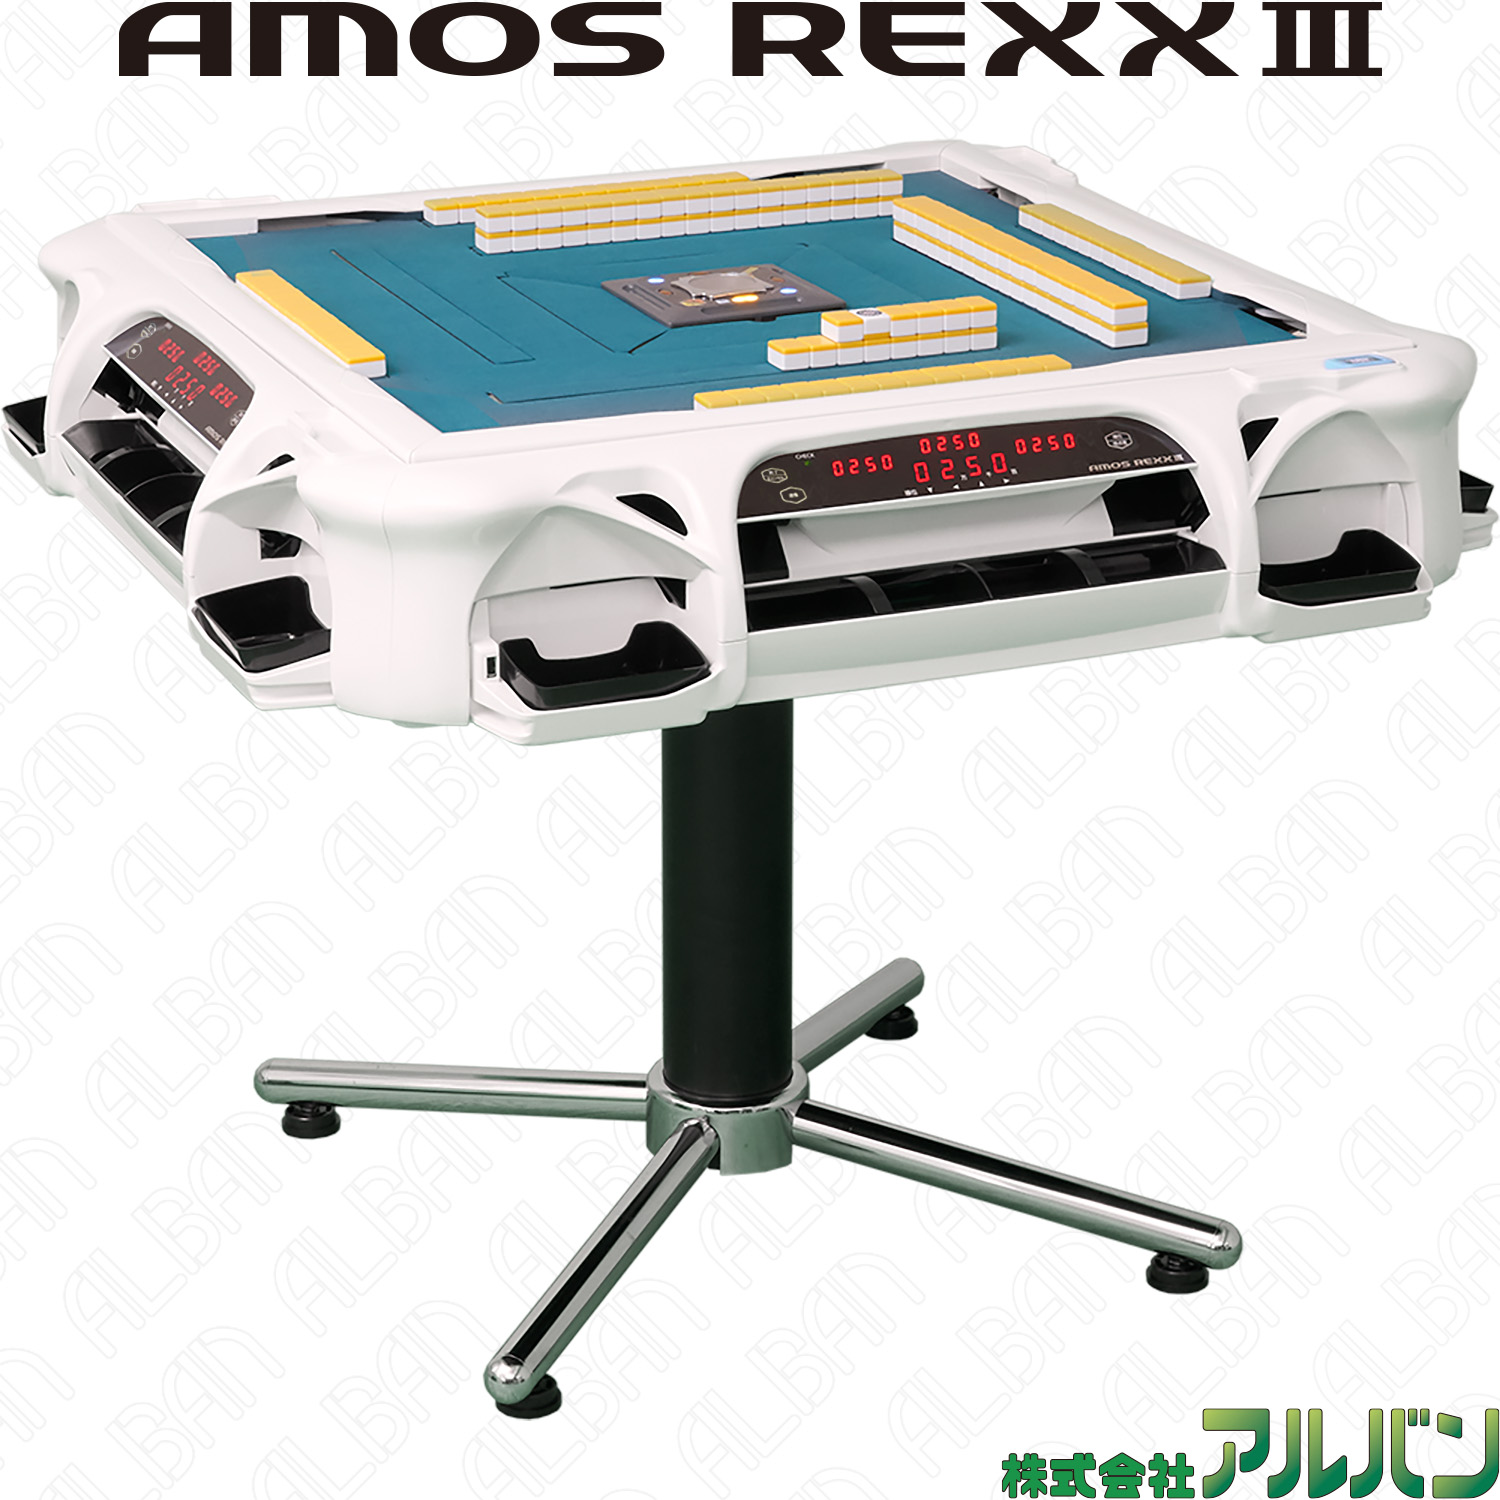 業務用全自動麻雀卓「アモスレックス3 / AMOS REXX Ⅲ」【ホワイト 